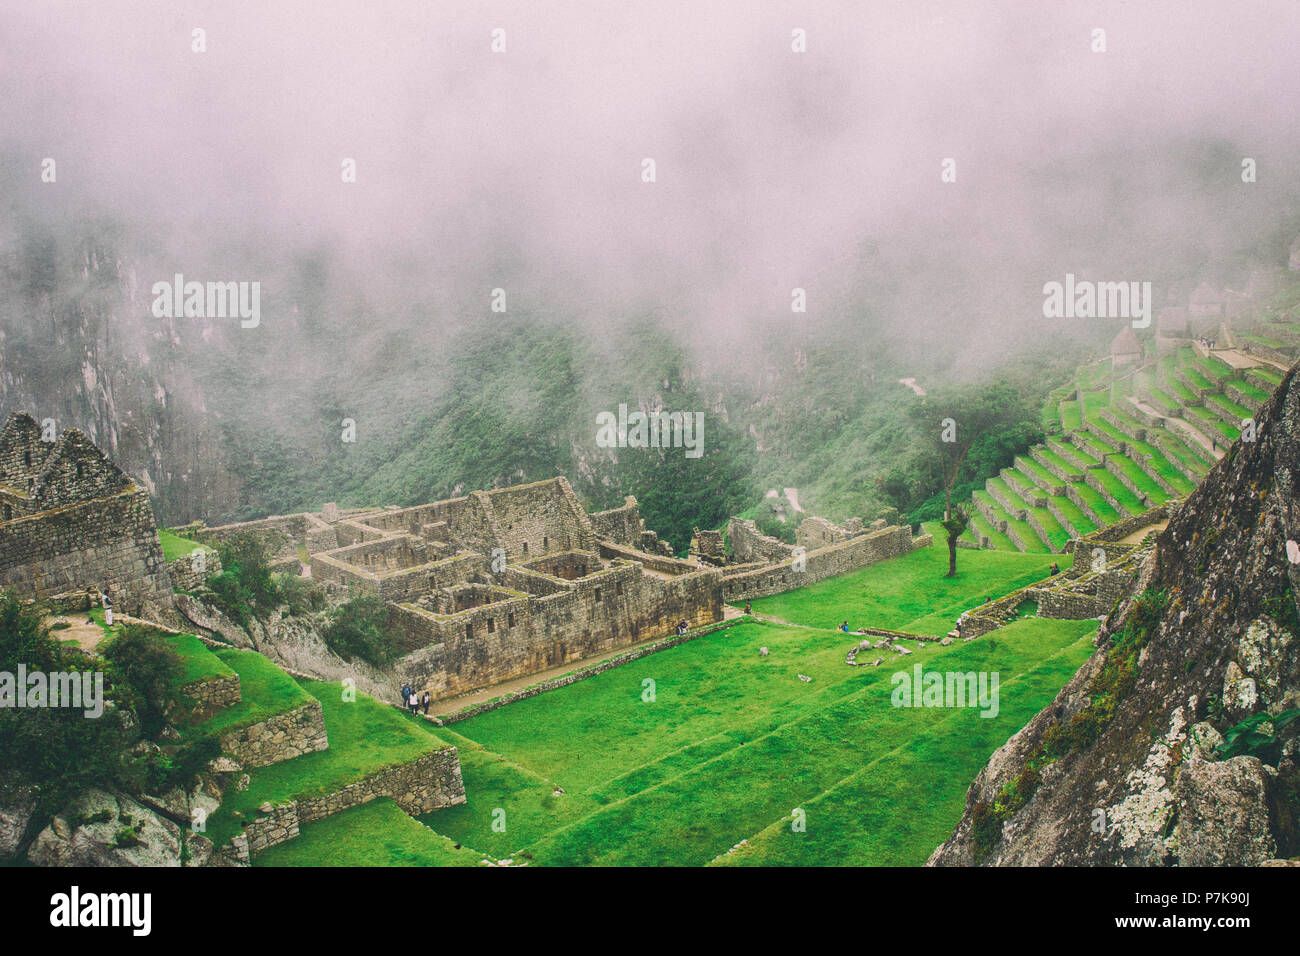 La giornata inizia con la nebbia intensa in aria in Machu Picchu. Lo storico sito archeologico in una misteriosa atmosfera. Bella immagine di sfondo. Foto Stock